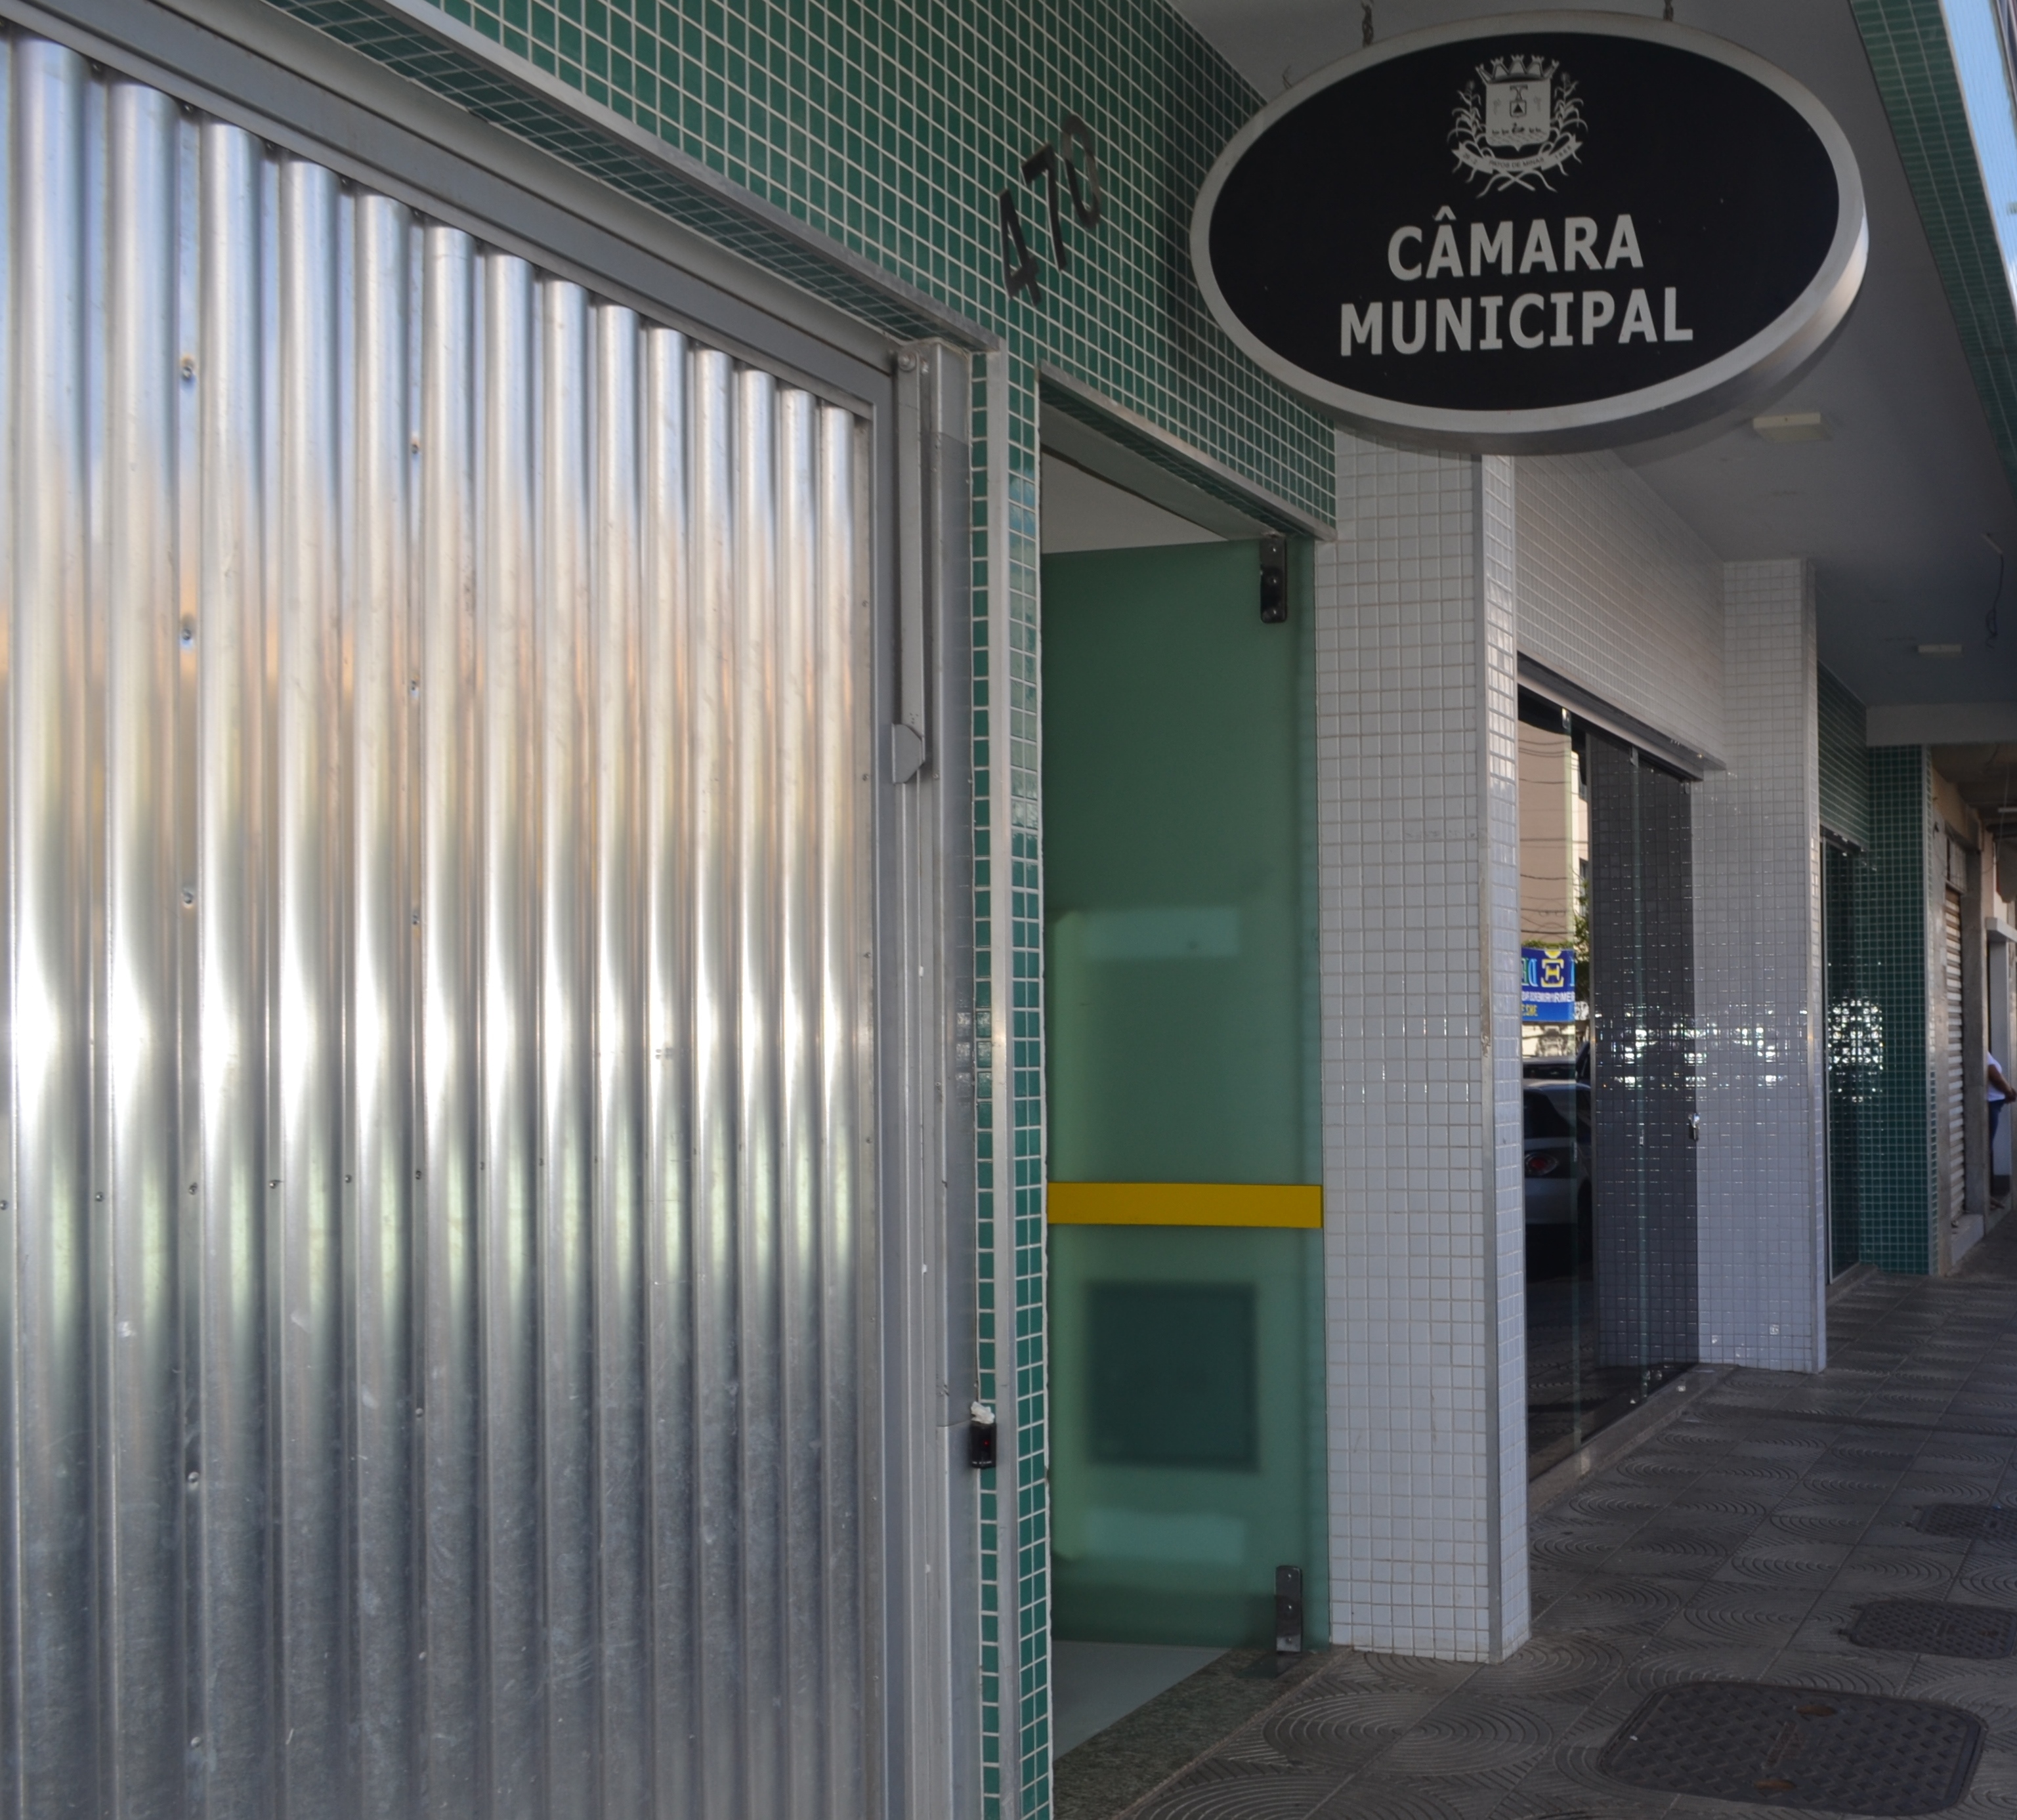  Vereadores sugerem ao prefeito emendas ao projeto de lei que trata da “Reforma da Previdência” dos servidores públicos de Patos de Minas